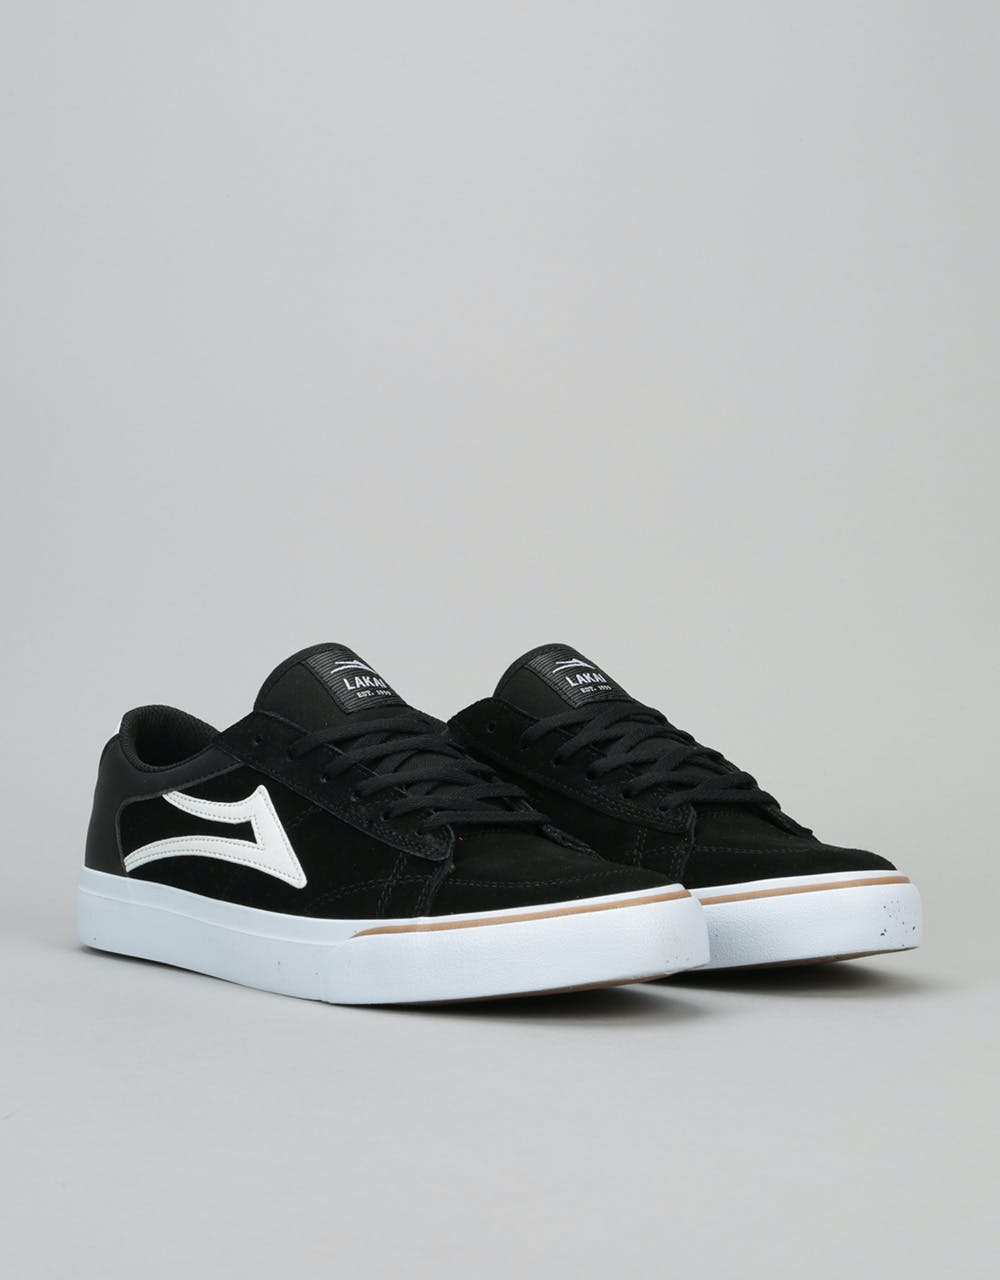 Lakai Ellis Skate Shoes - Black/White Suede